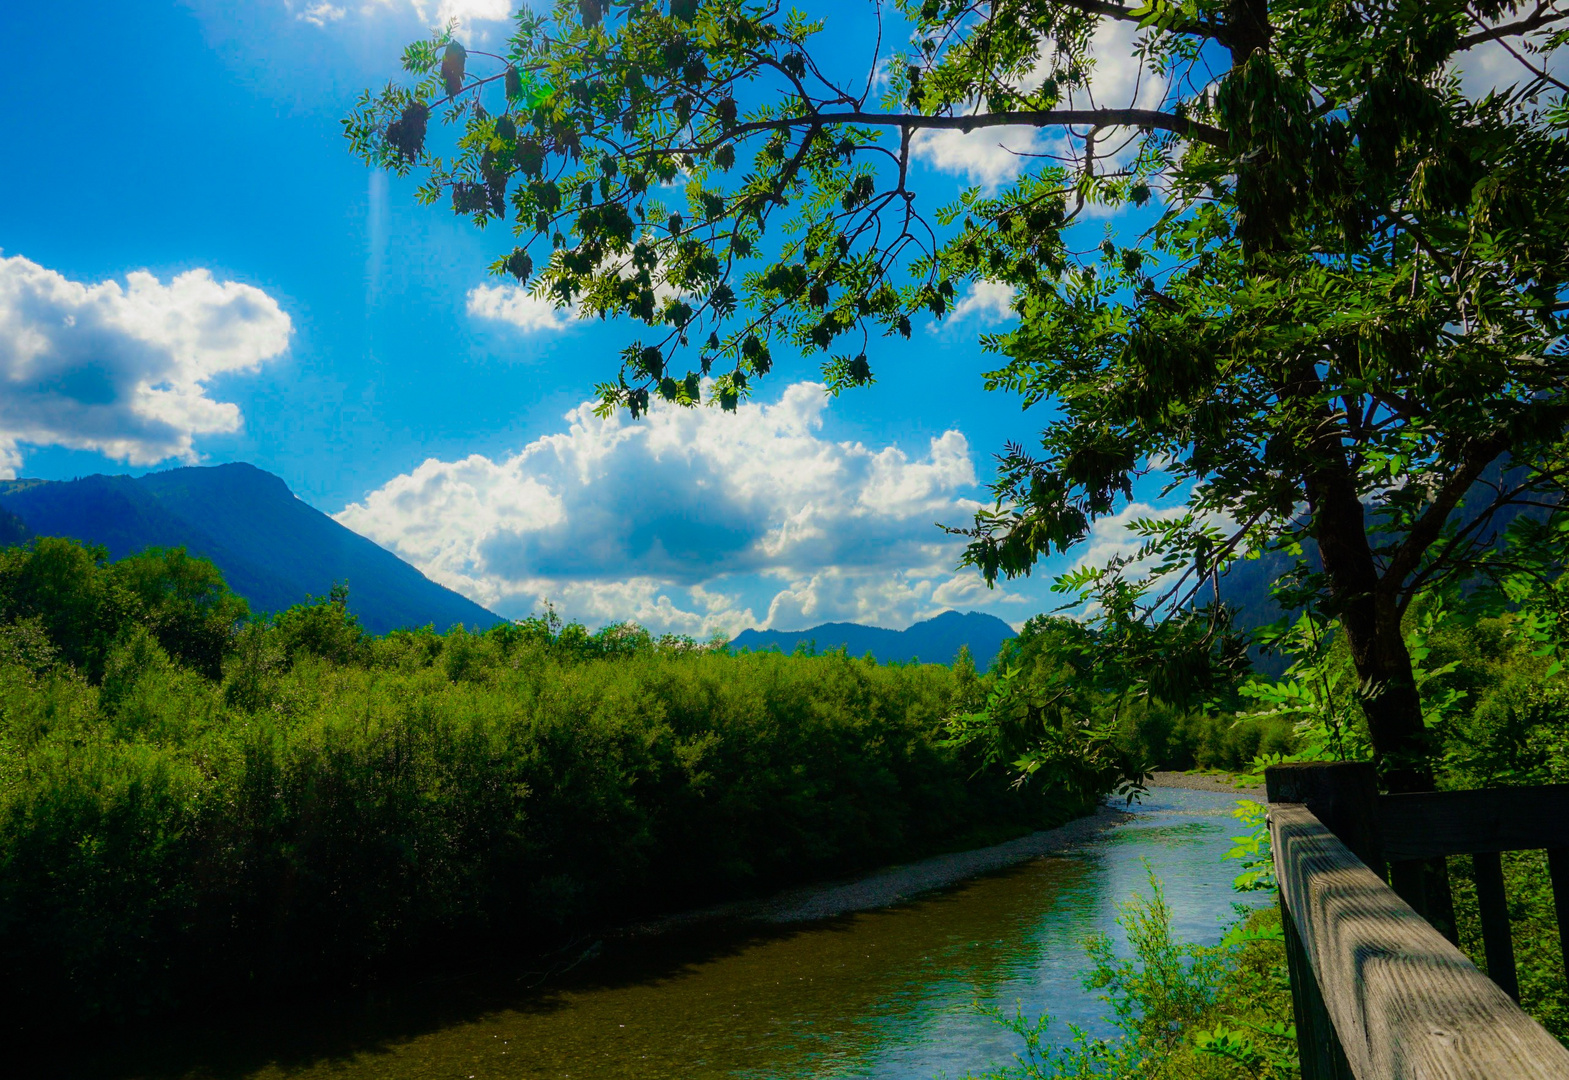 Spaziergang am Fluss - Vils / Tirol